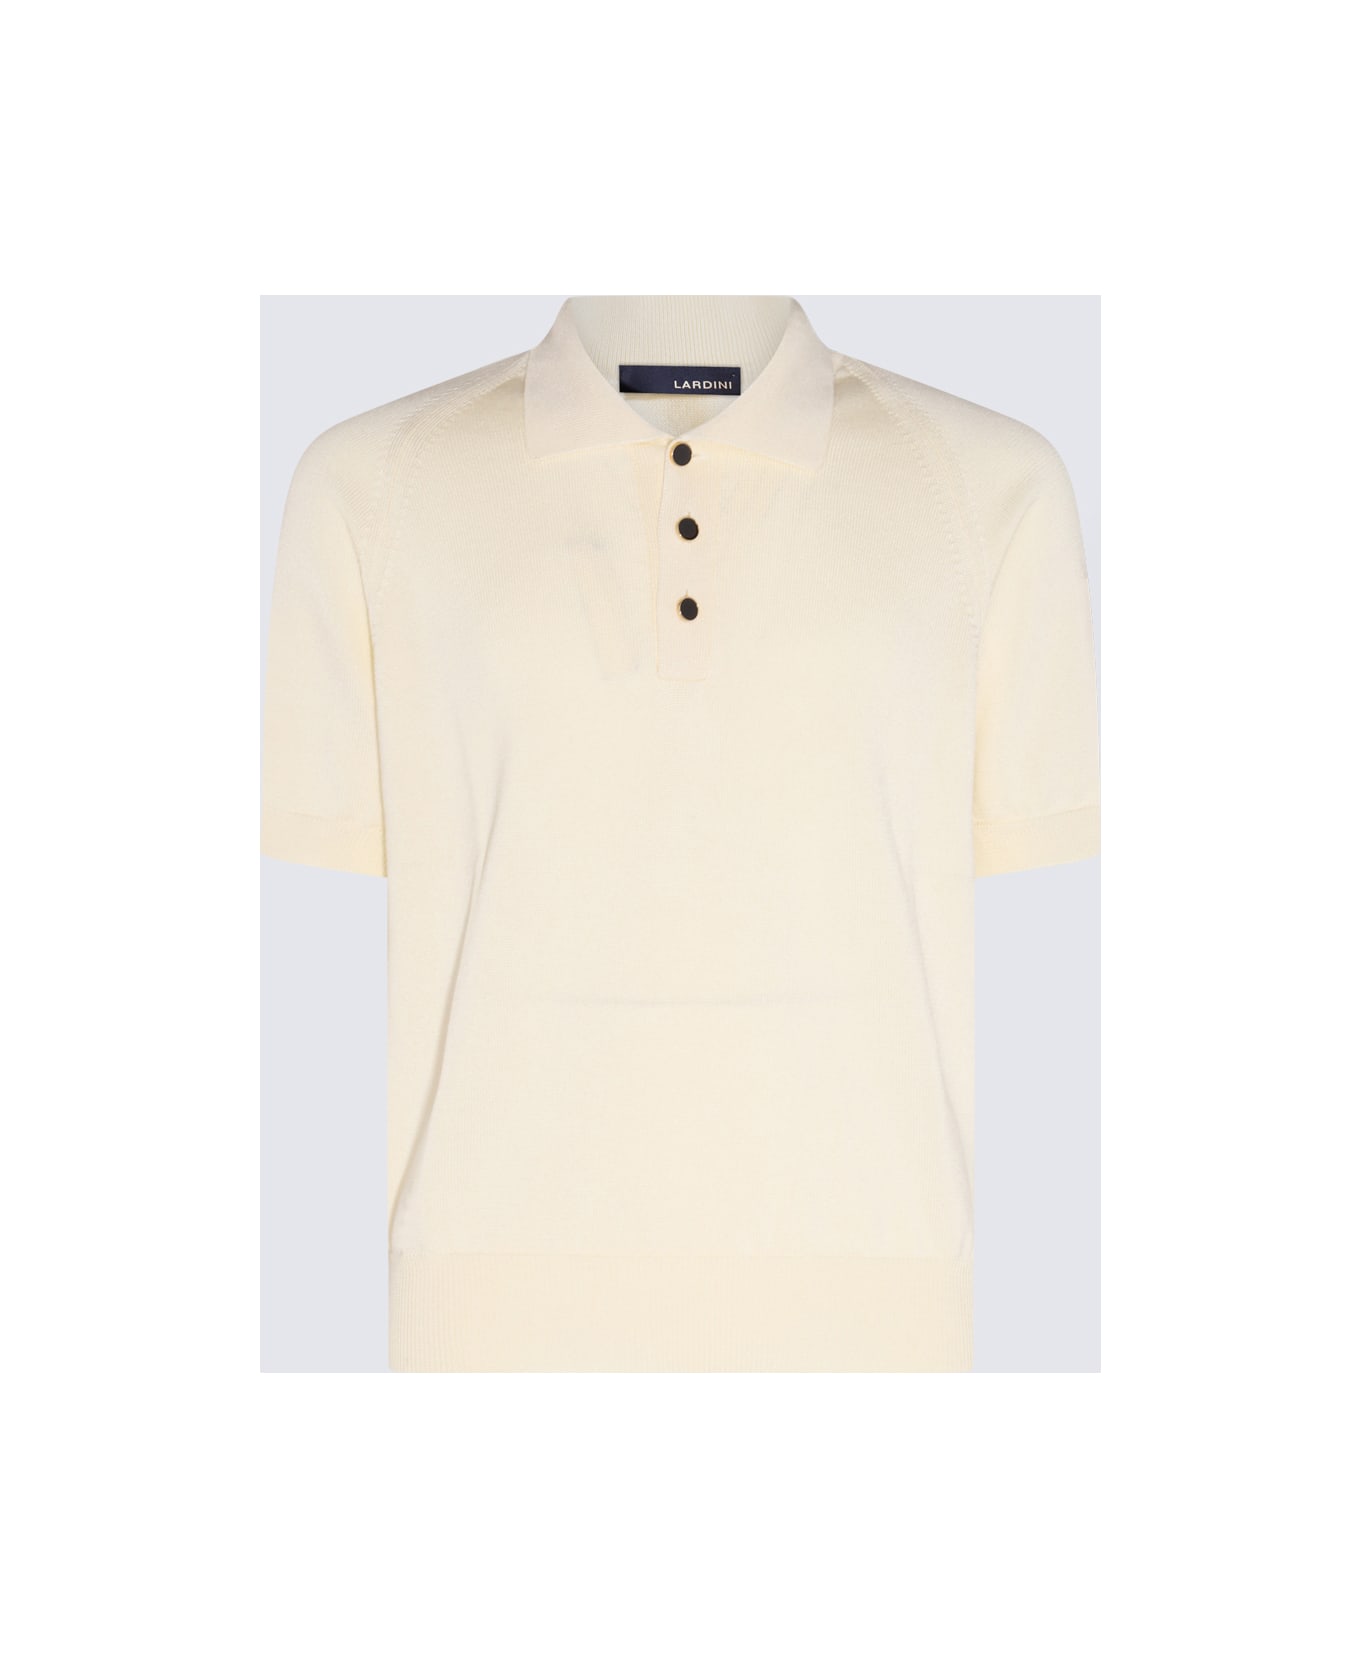 Lardini White Cotton Polo Shirt - White